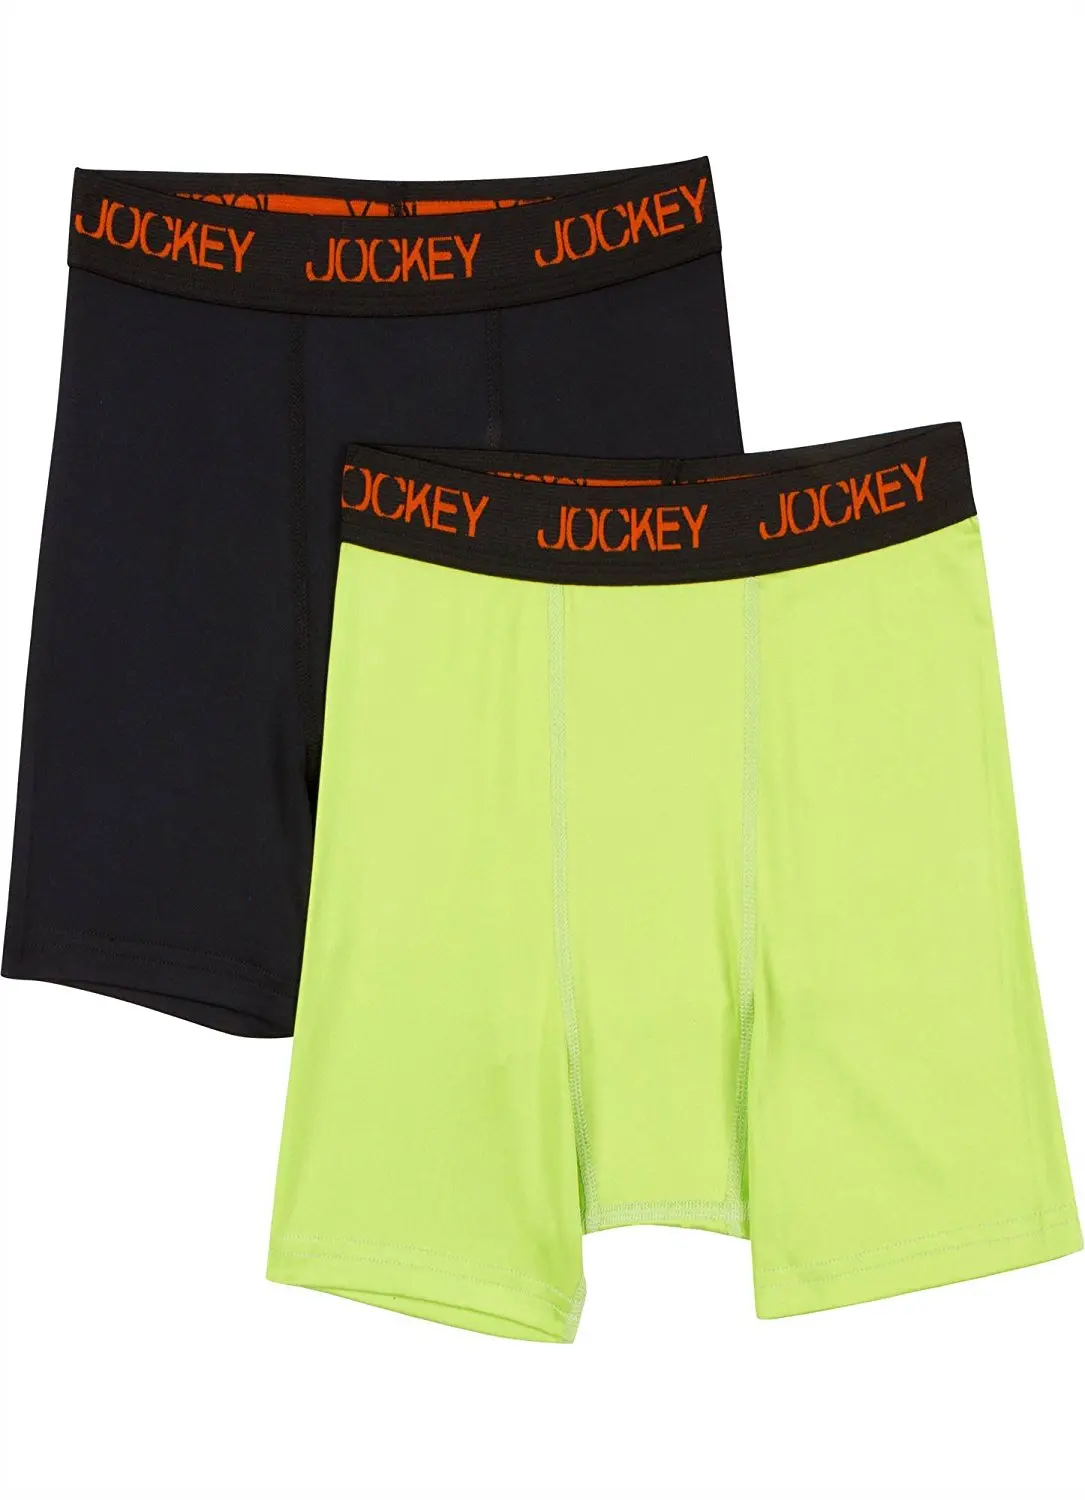 Cheap Jockey 61683 Underwear, find Jockey 61683 Underwear deals on line ...